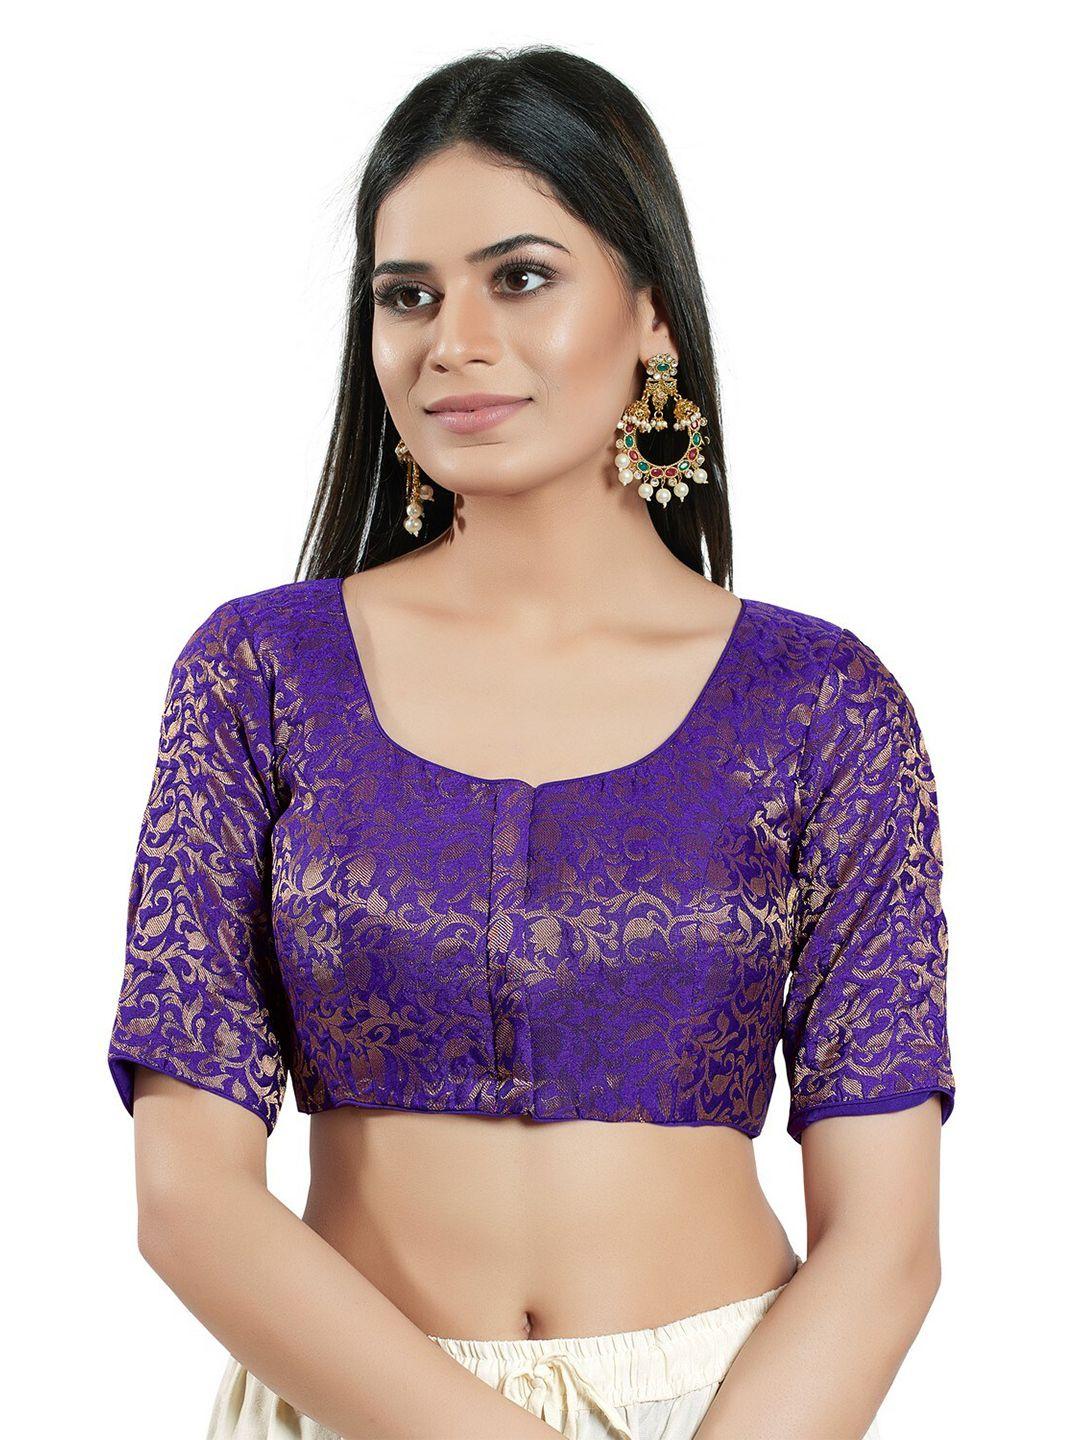 salwar studio brocade woven design saree blouse